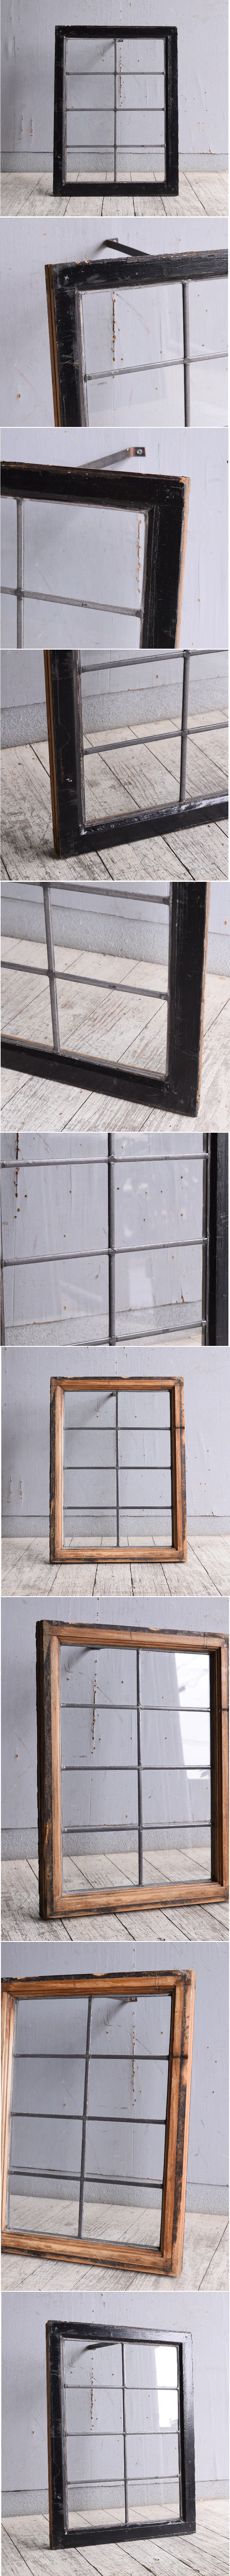 イギリス アンティーク 窓 無色透明 9950